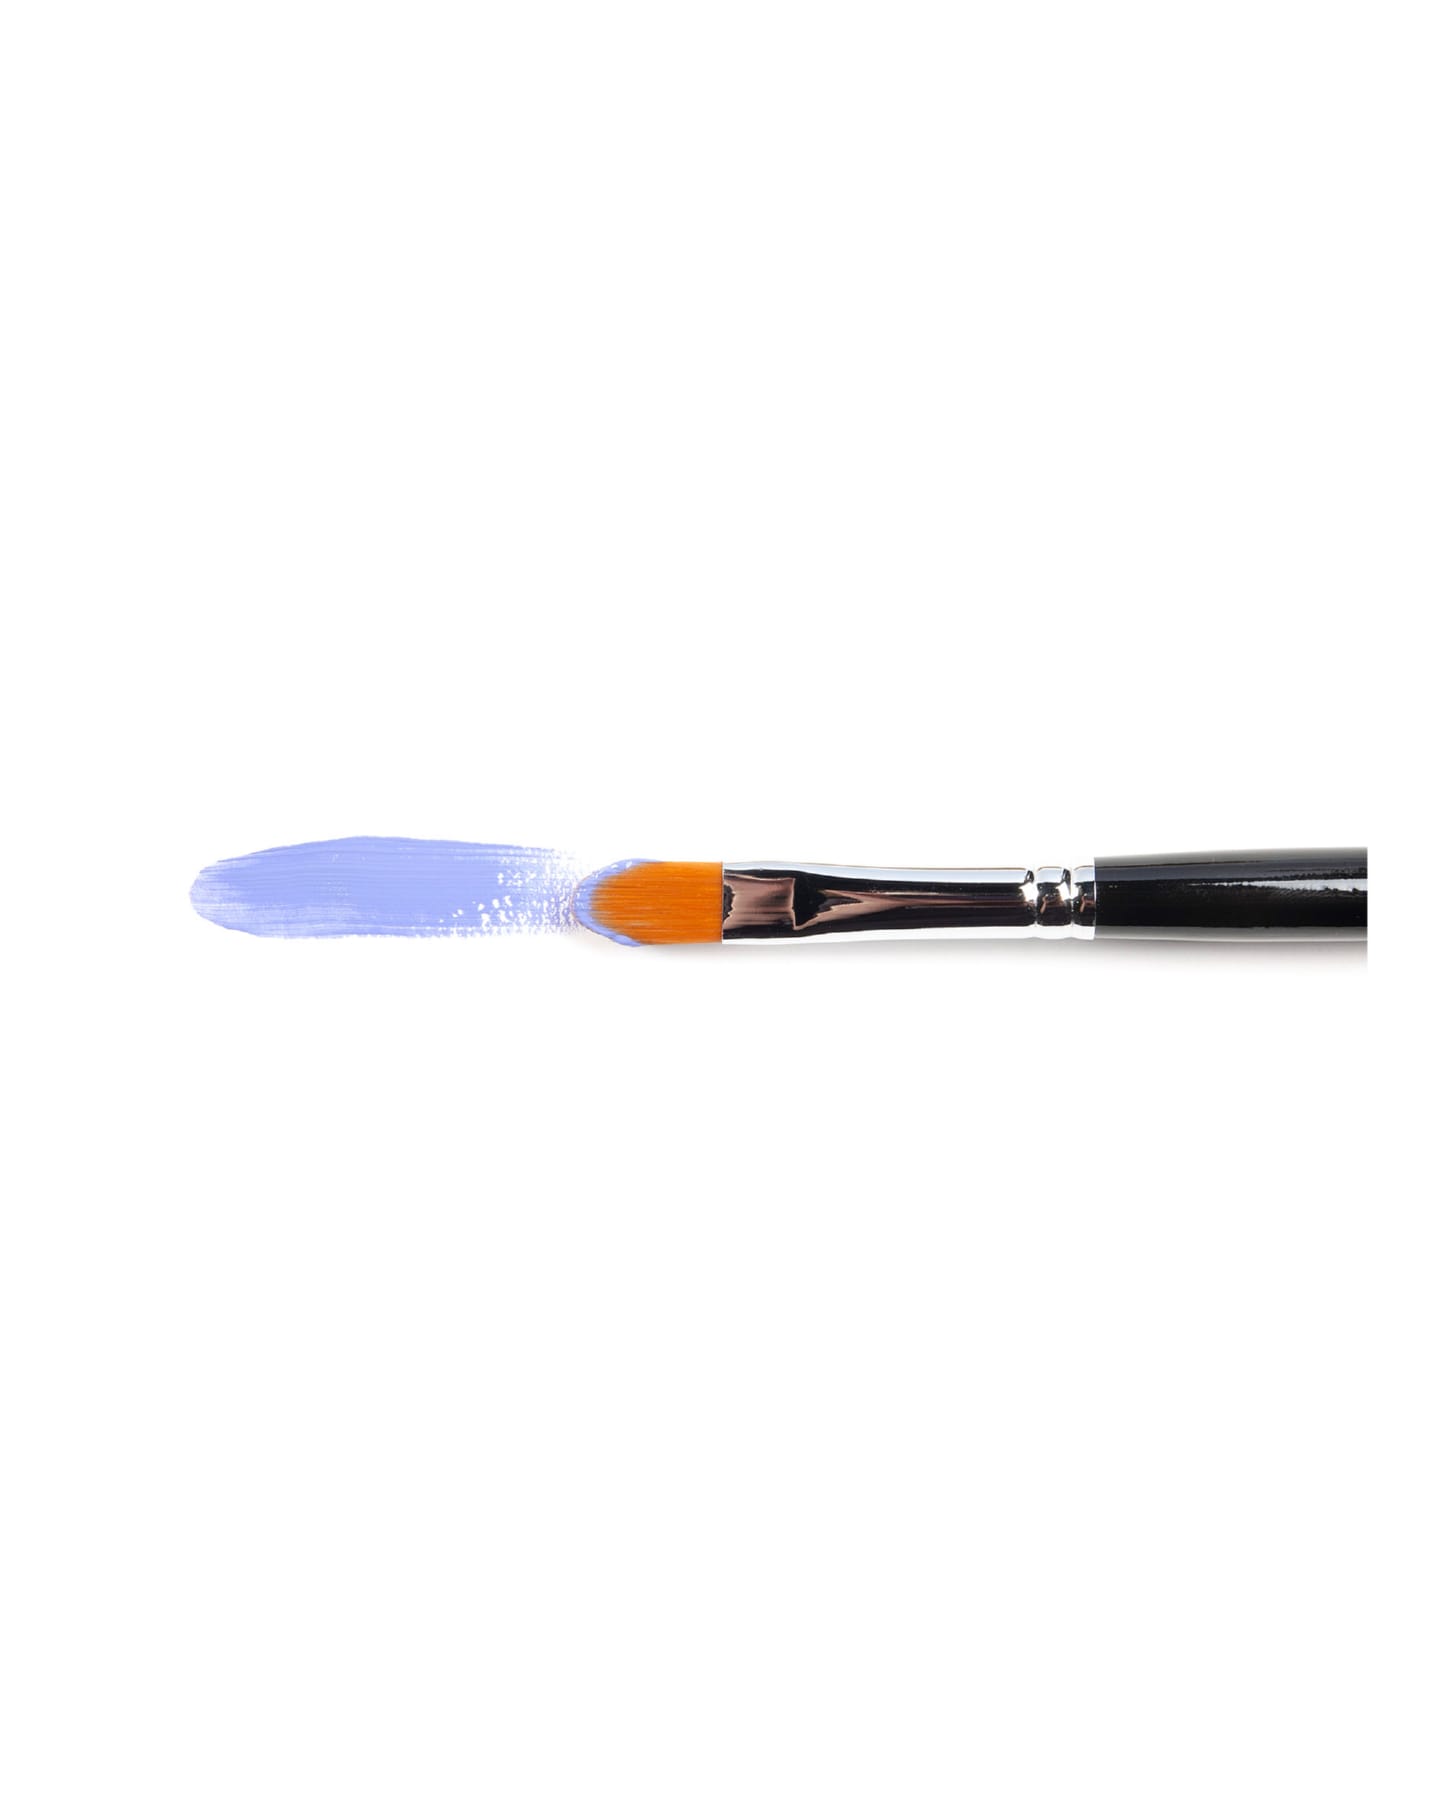 Кисть для акрила Amsterdam 343 синтетика мягкая овальная ручка длинная 5 шт/упак 15 размеров в ассортименте